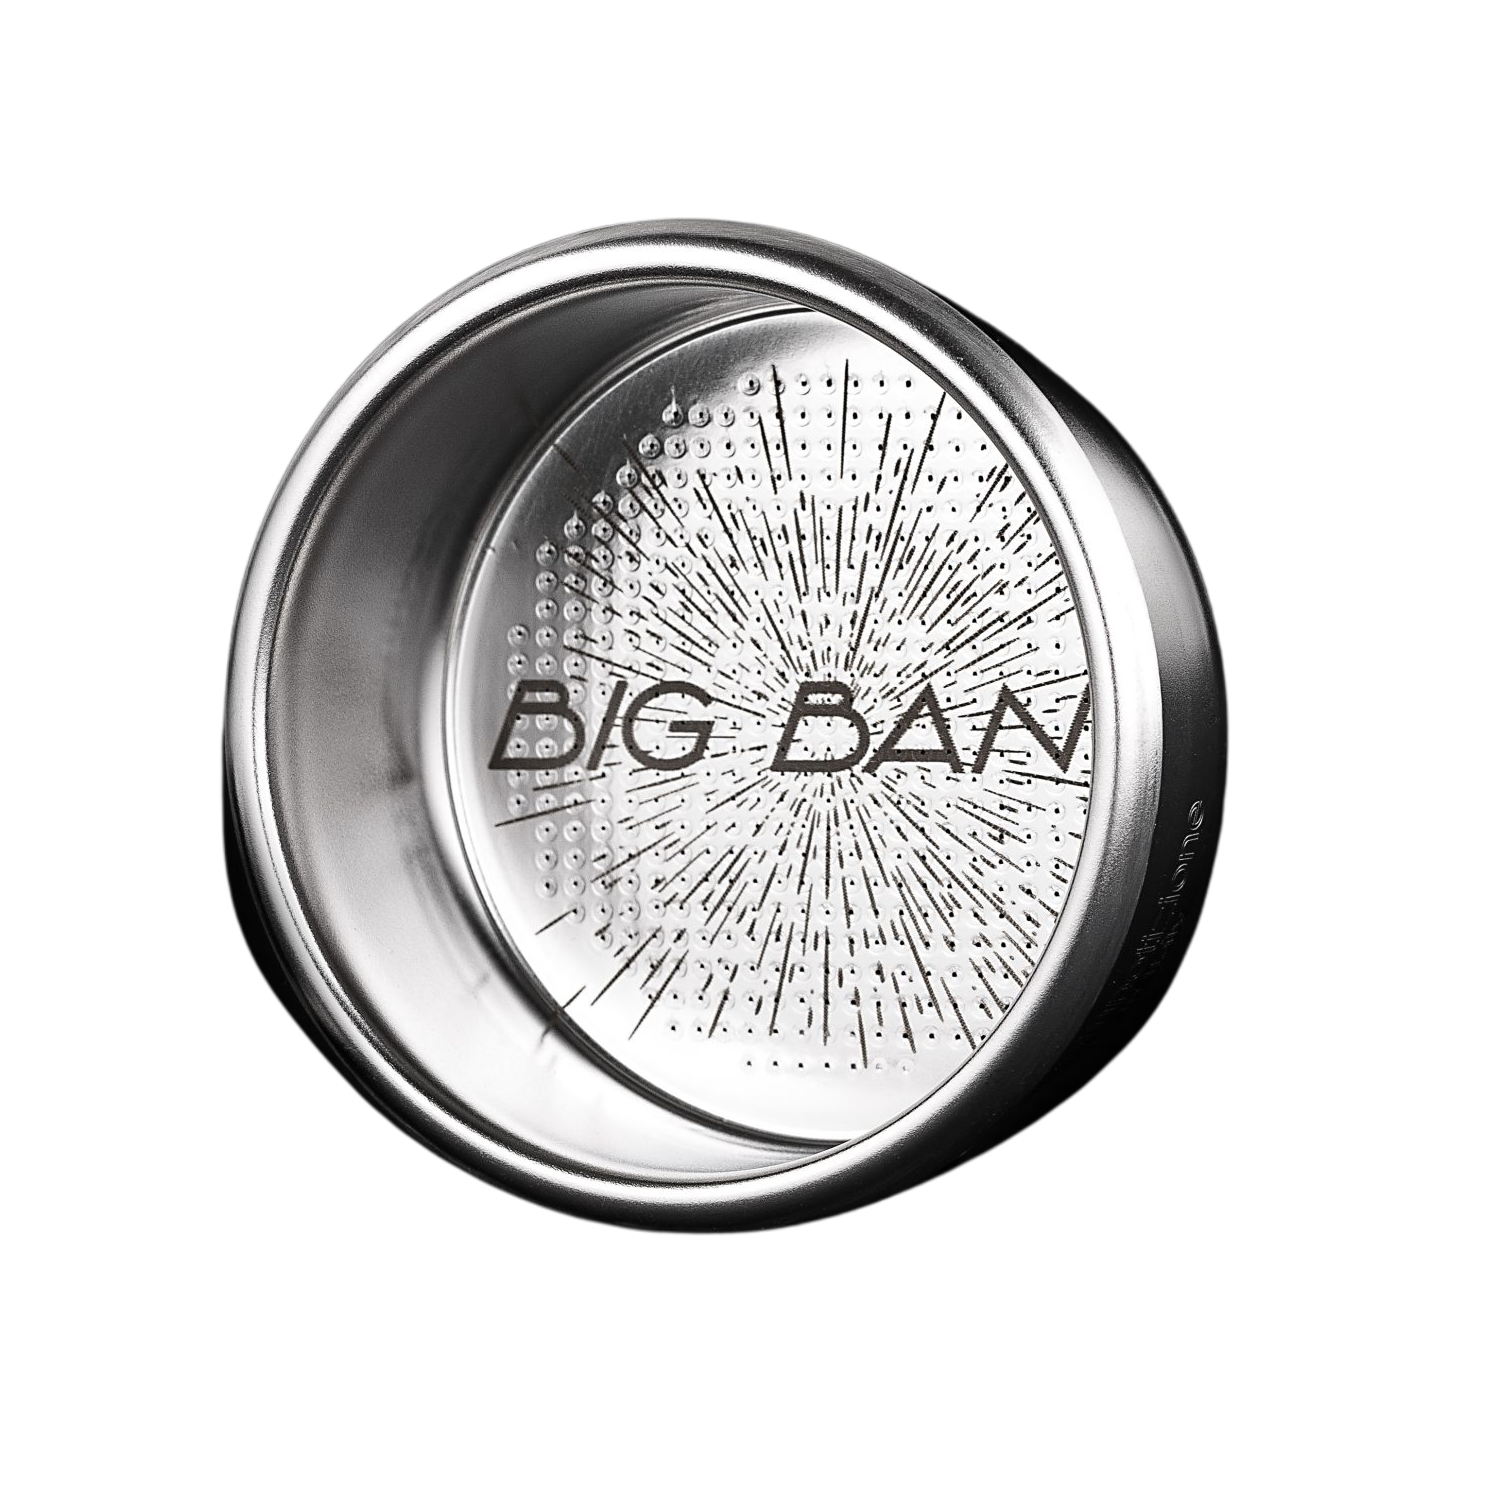 IMS Competition Big Bang Basket For Breville 54mm Group - 18/20gr